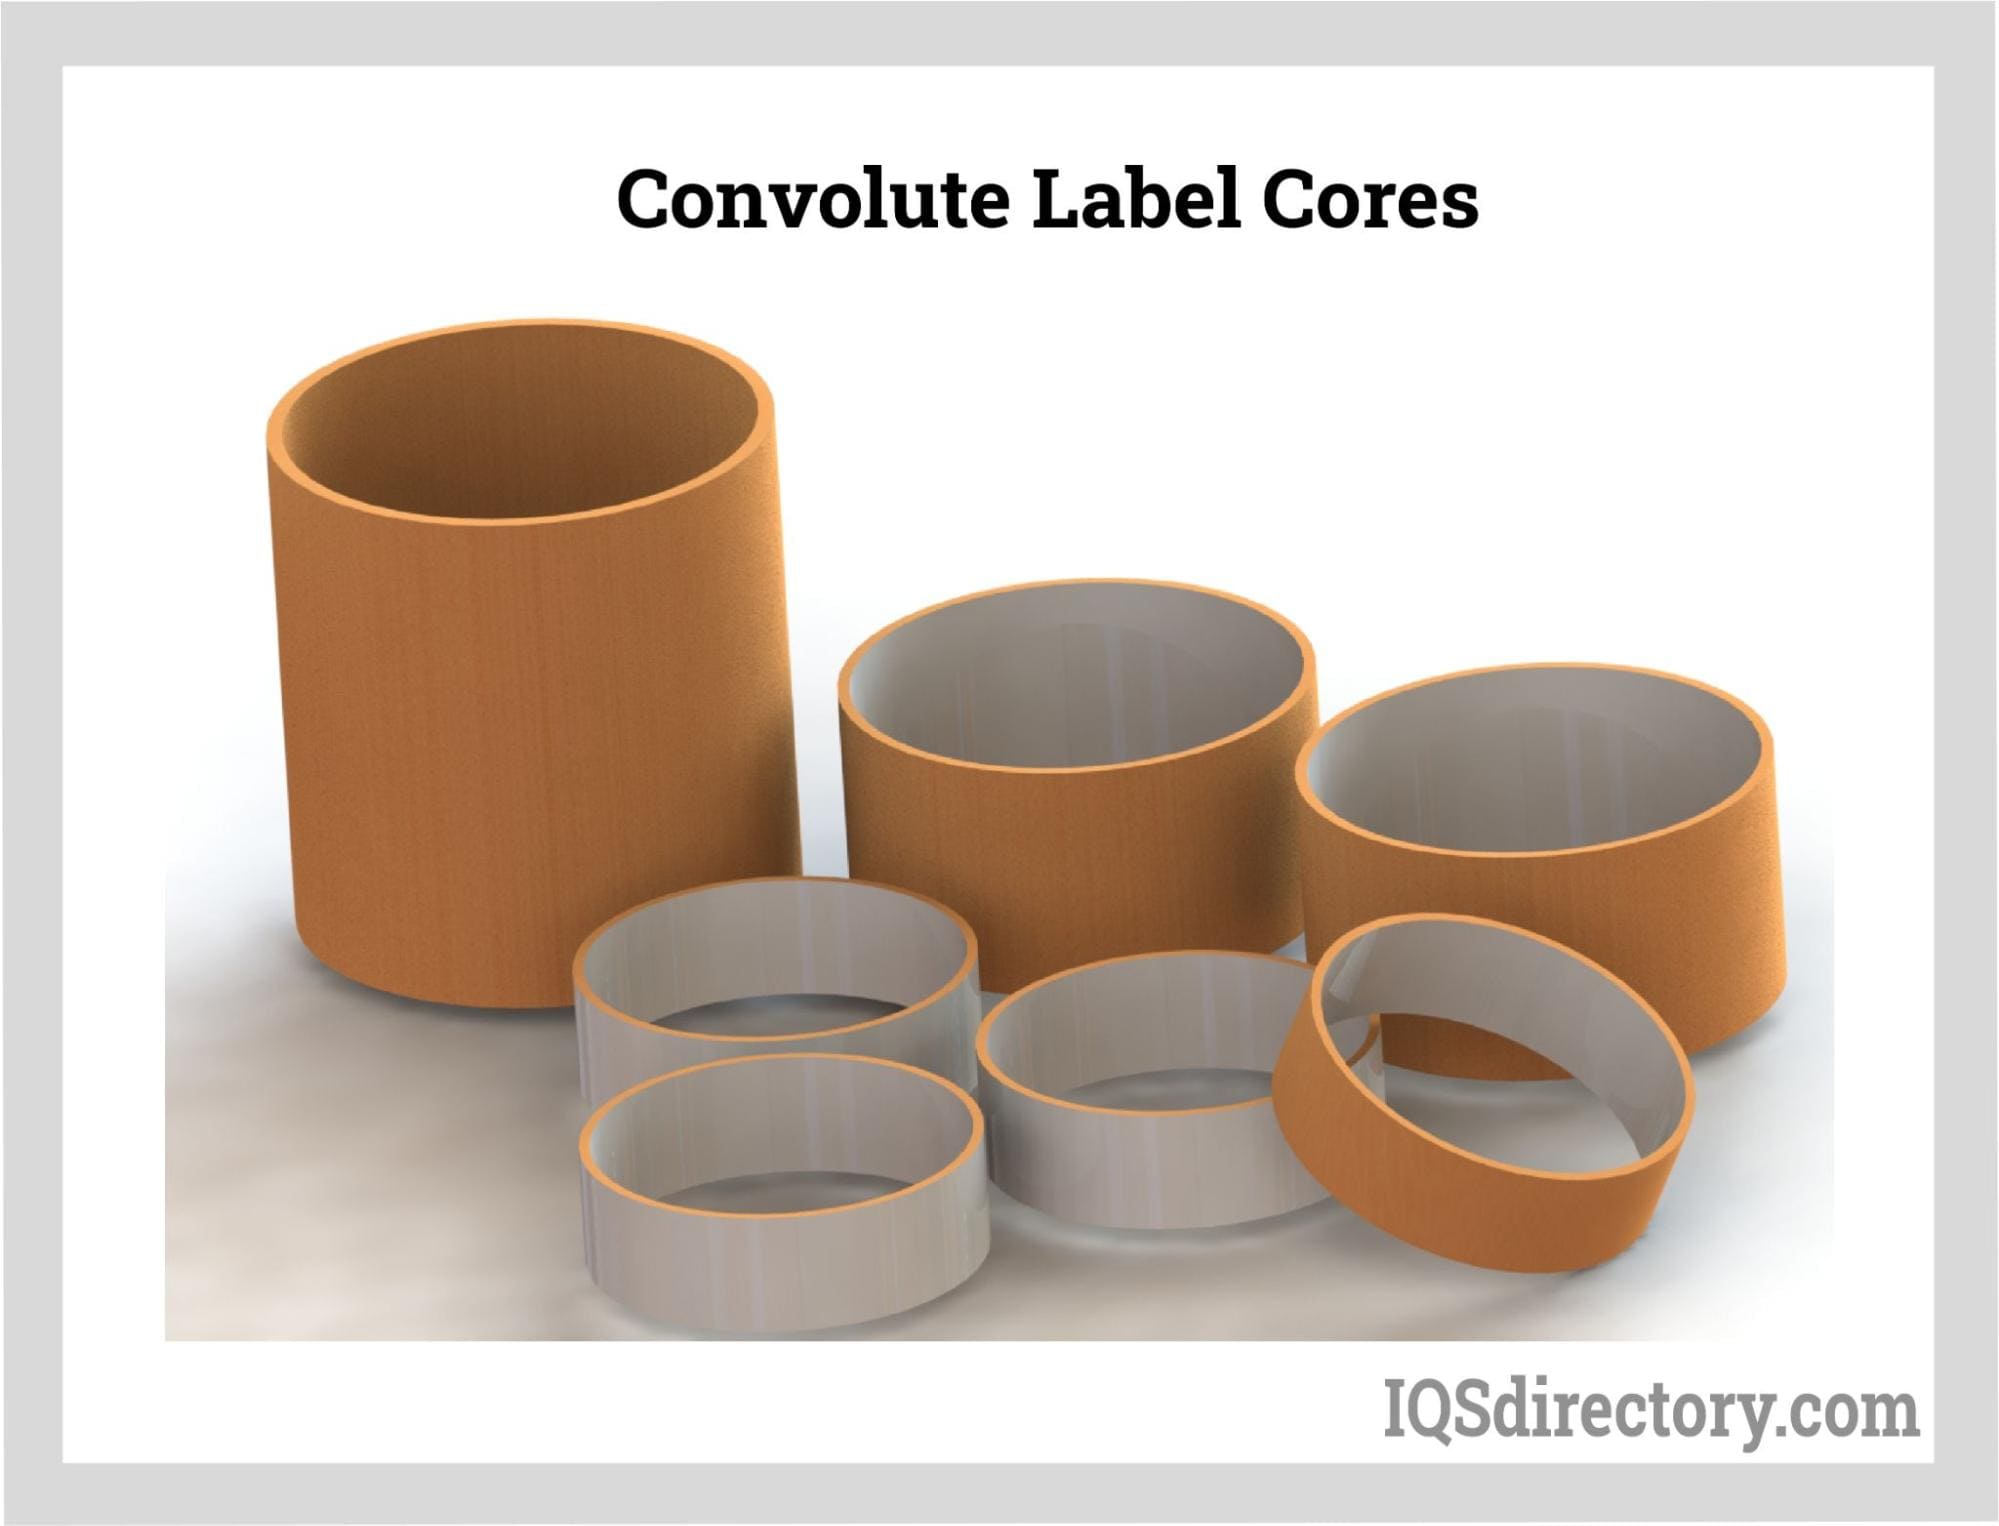 Convolute Label Cores